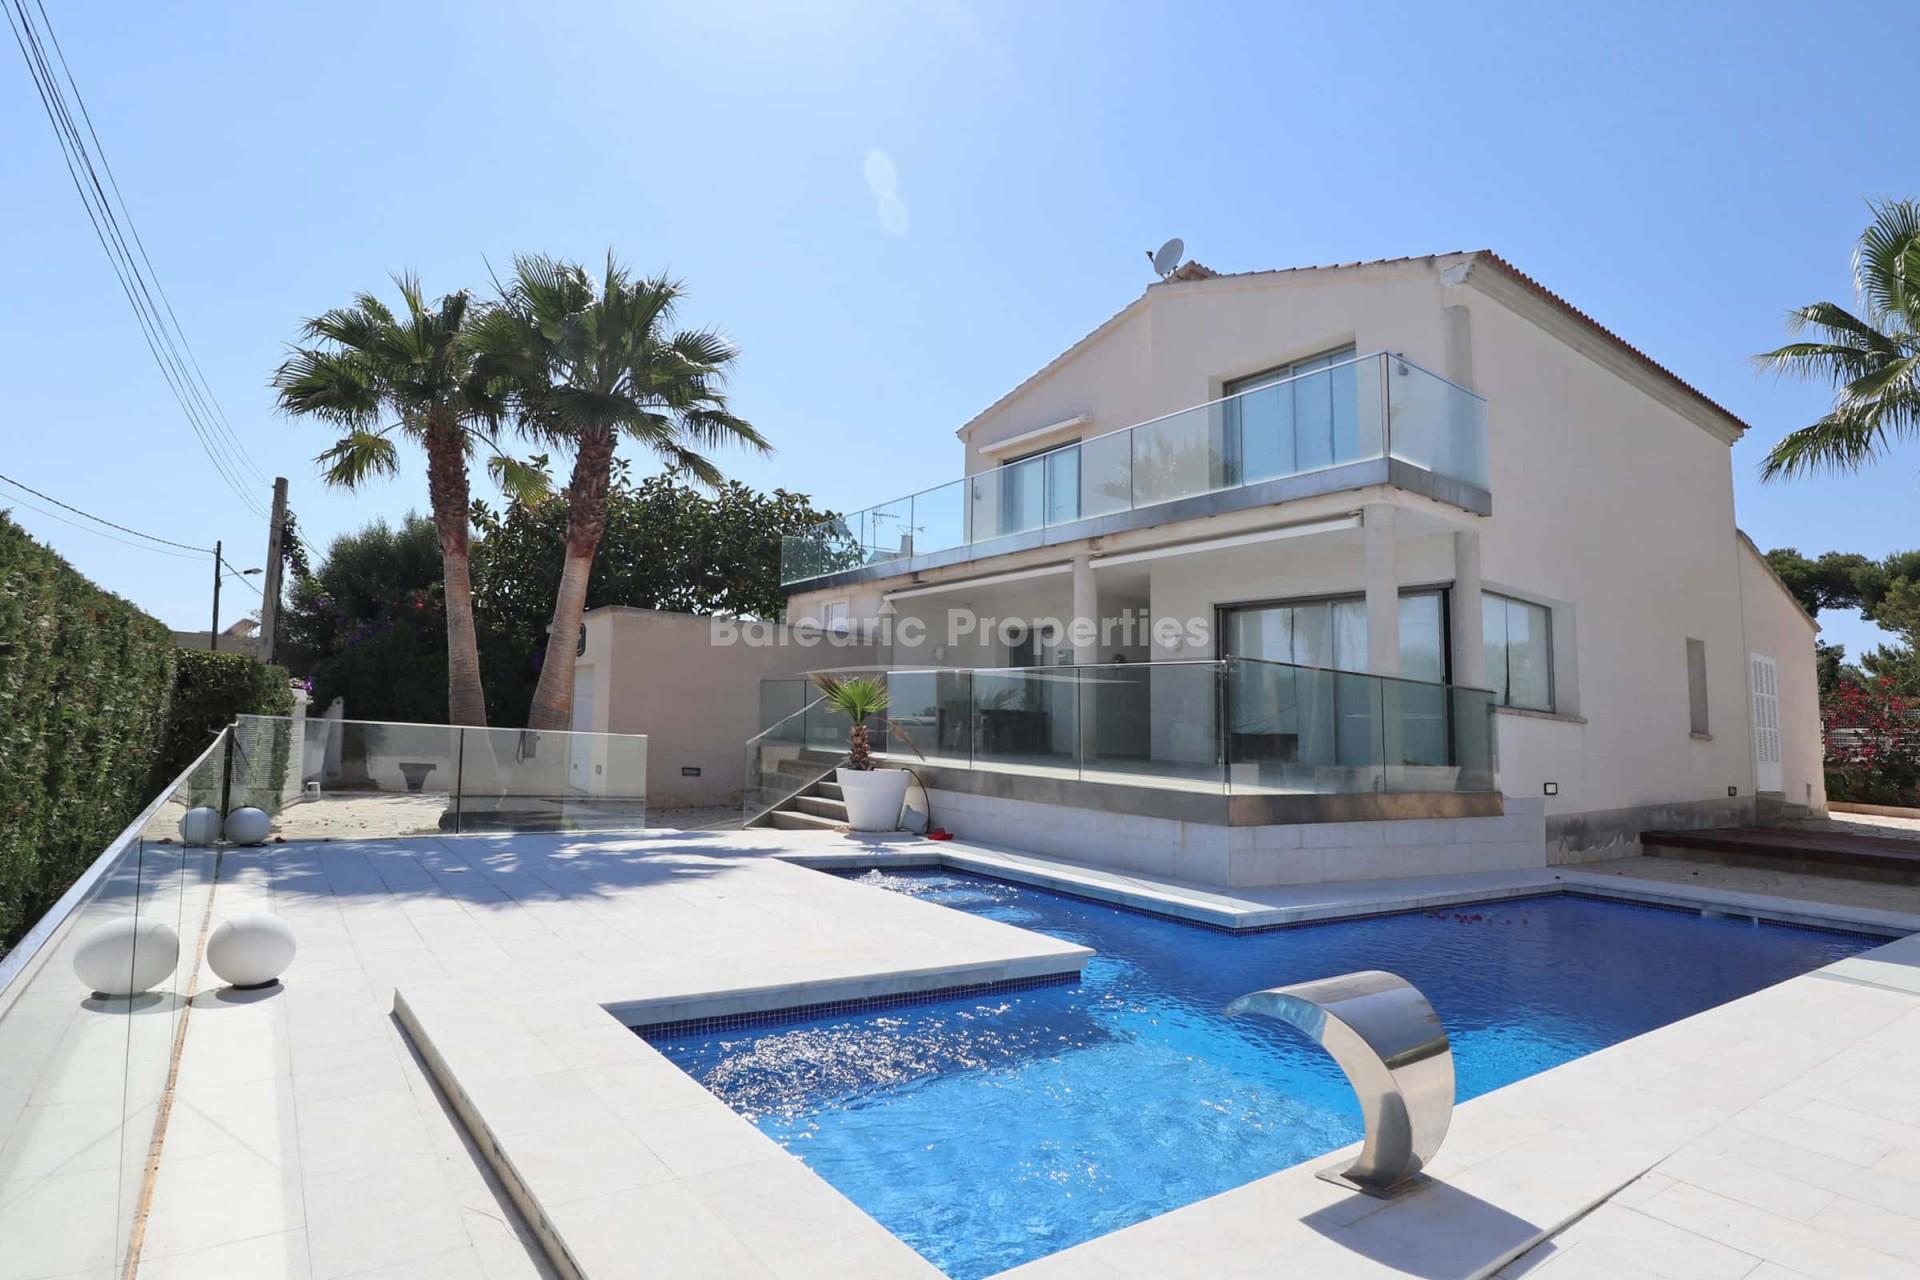 Modern villa with sea views for sale in Cala Pi, Mallorca